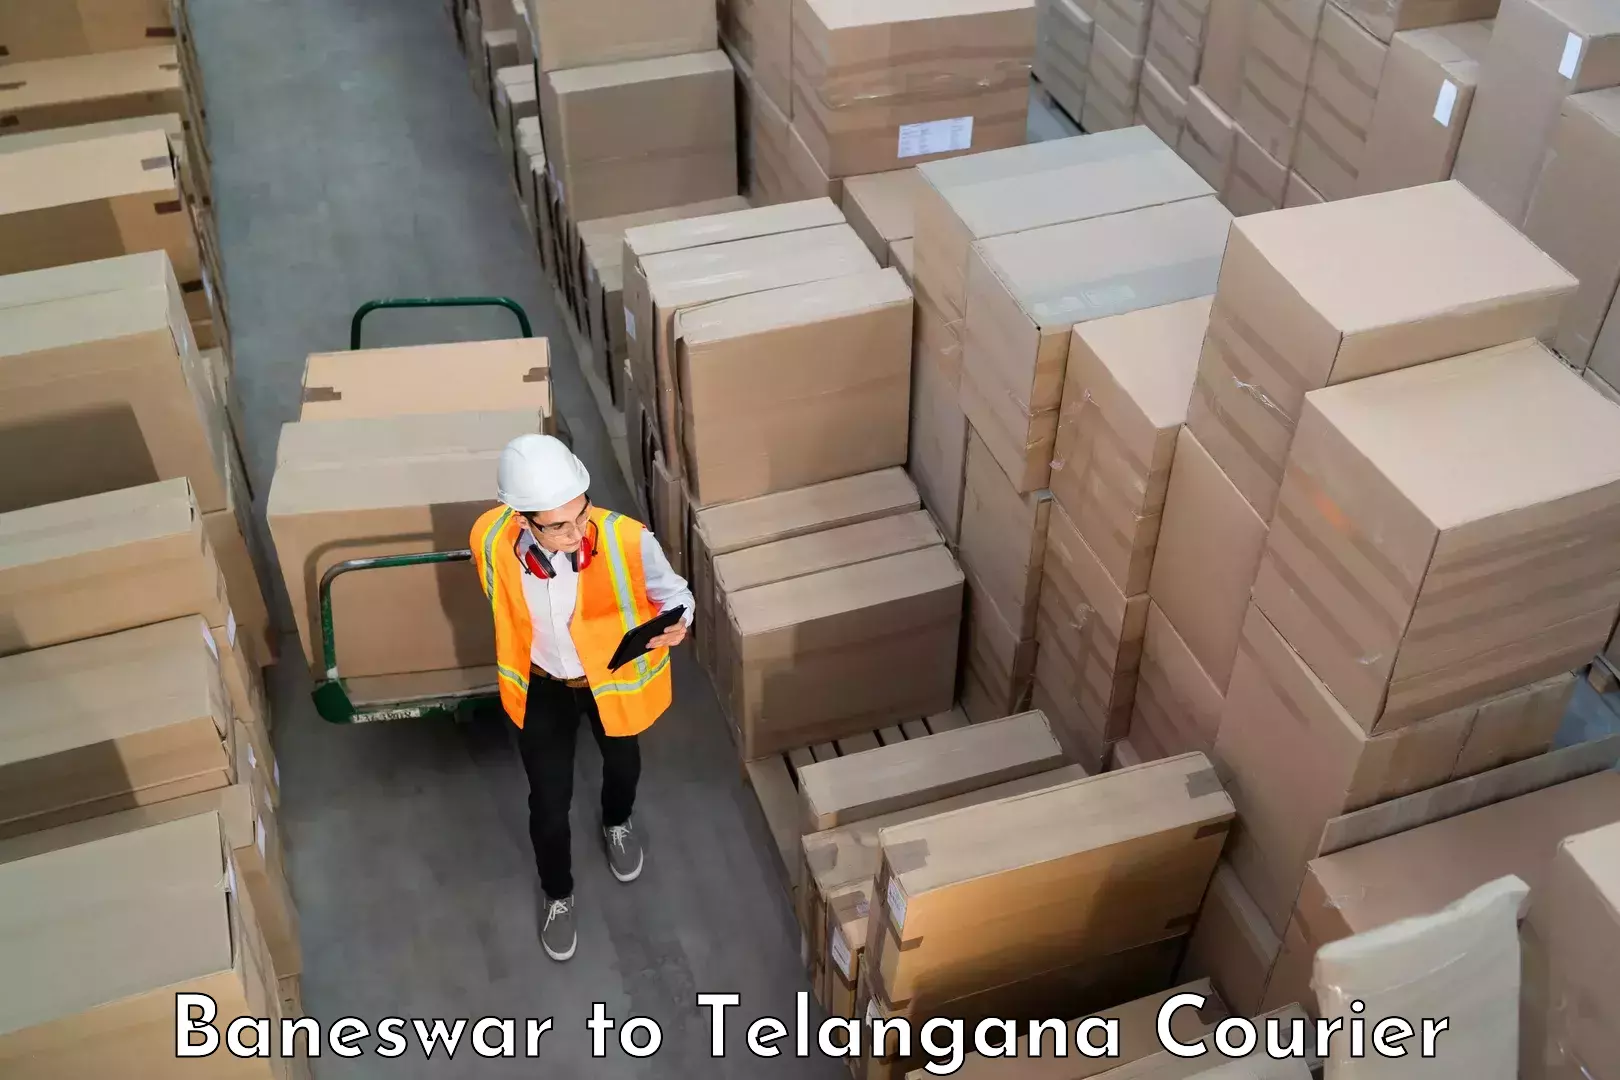 Luggage courier rates calculator Baneswar to Nalgonda